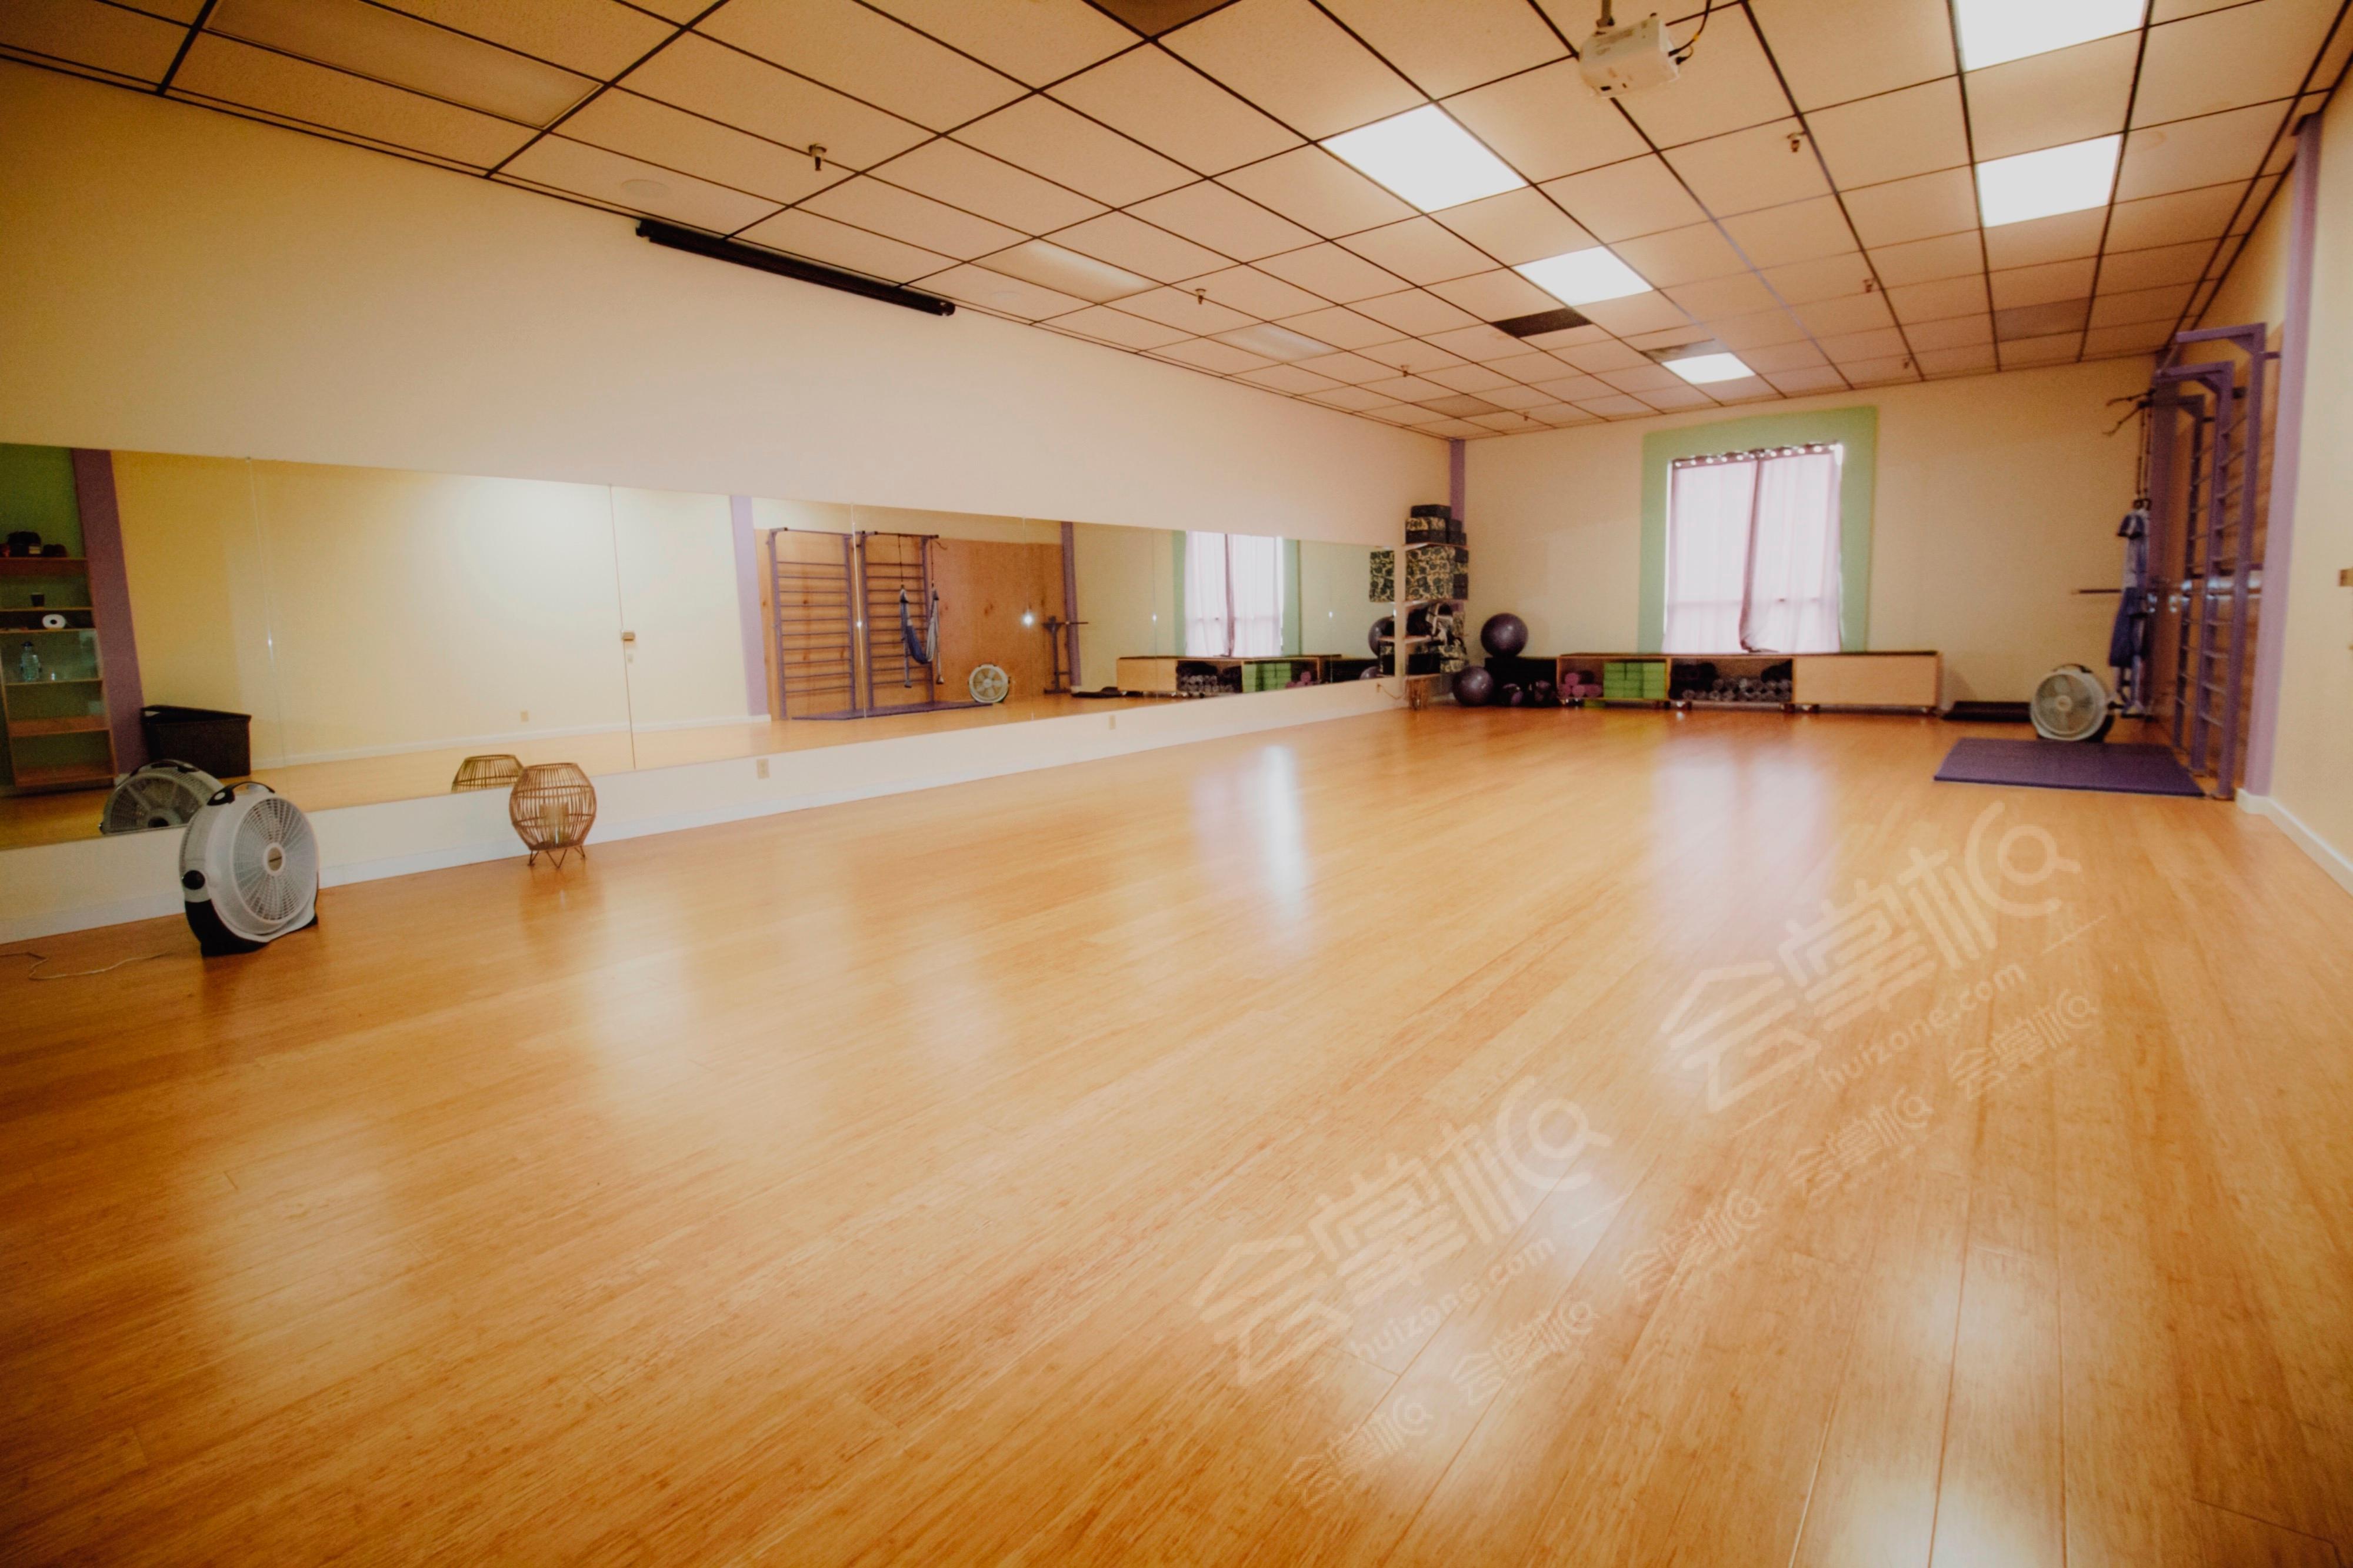 Private Yoga, Dance and Fitness Studio classes